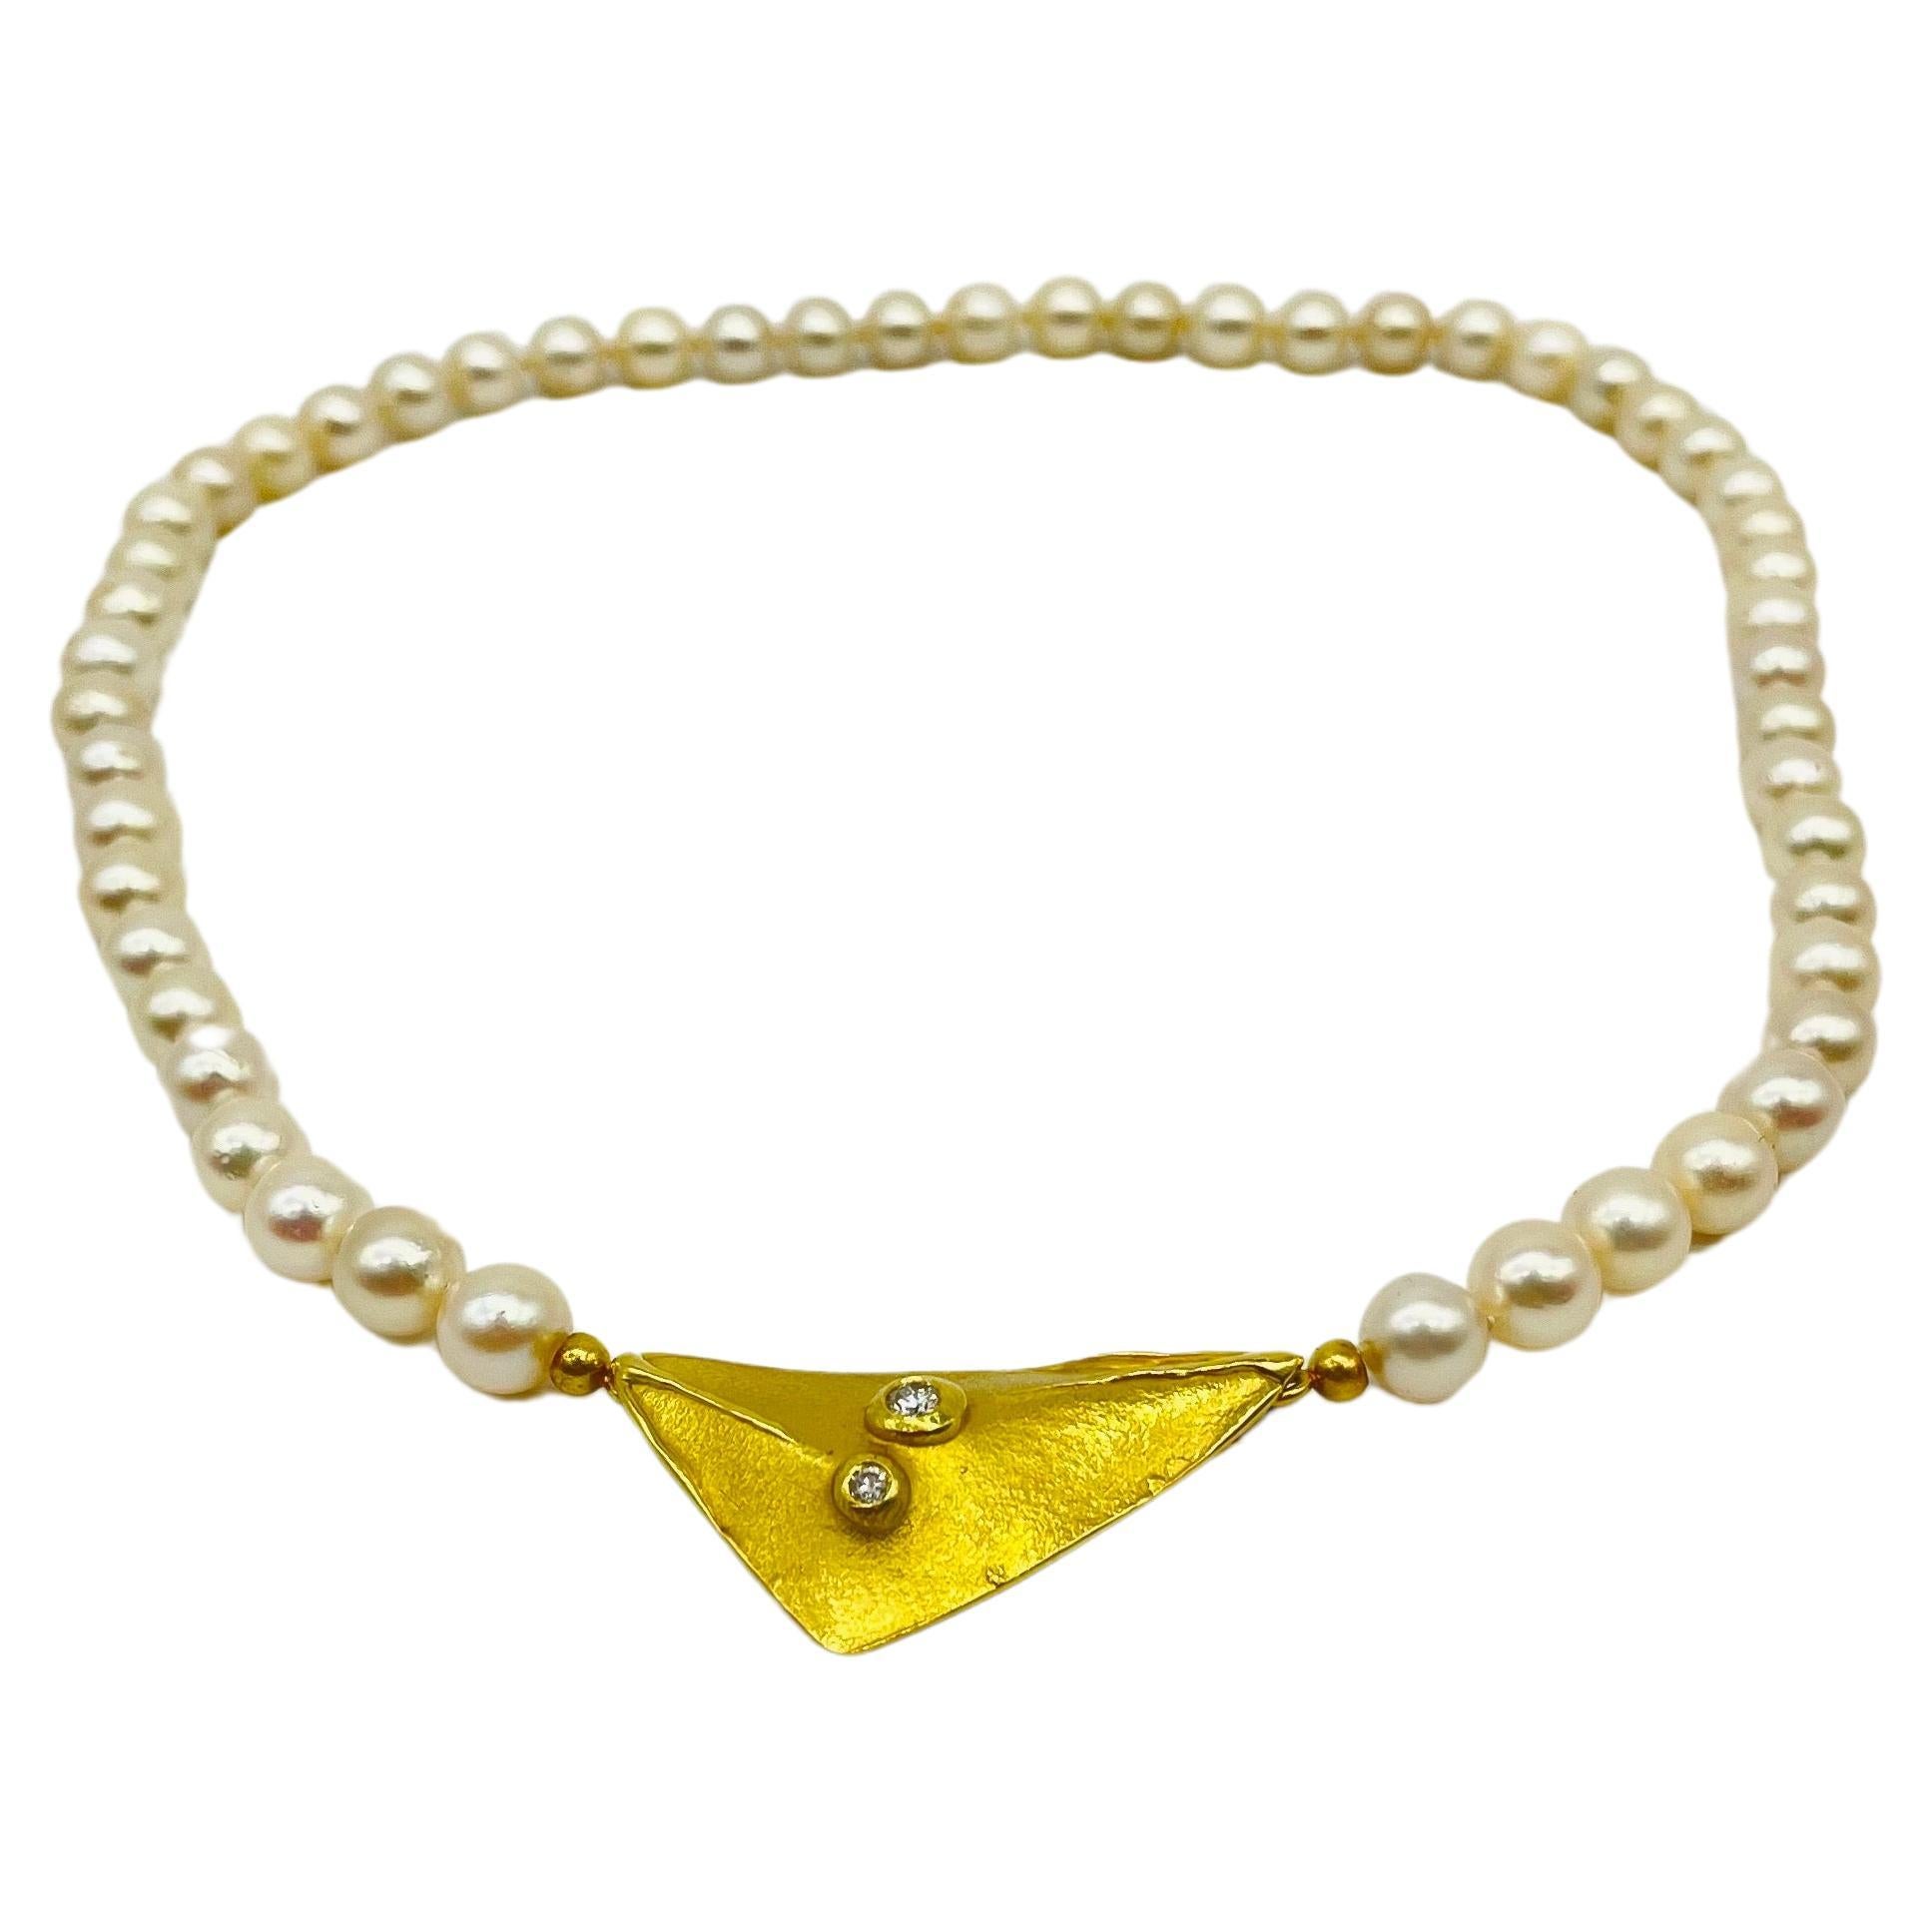 Plongez dans la beauté onirique de ce collier de perles exquis et élégant, arborant des perles d'une subtile teinte champagne. Les perles dégagent un charme intemporel et, en pendentif, ce collier présente une forme triangulaire gracieusement